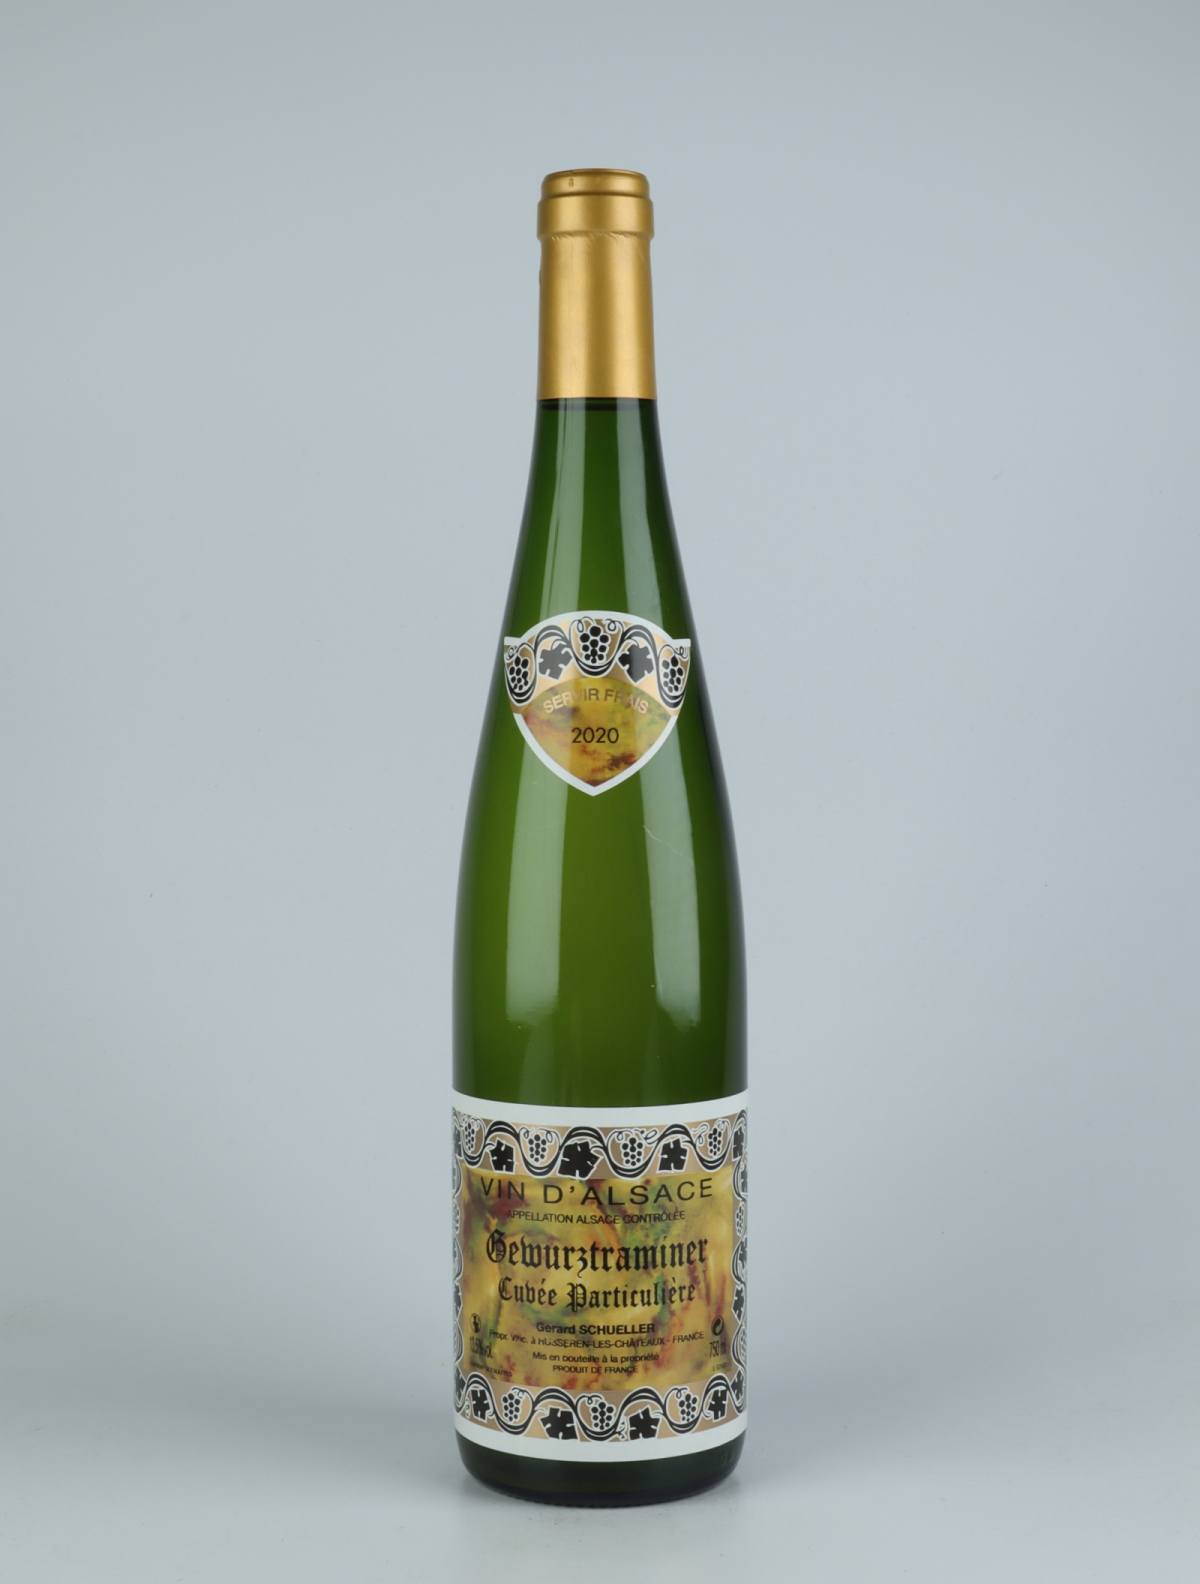 En flaske 2020 Gewürztraminer Cuvée Particulière Hvidvin fra Gérard Schueller, Alsace i Frankrig